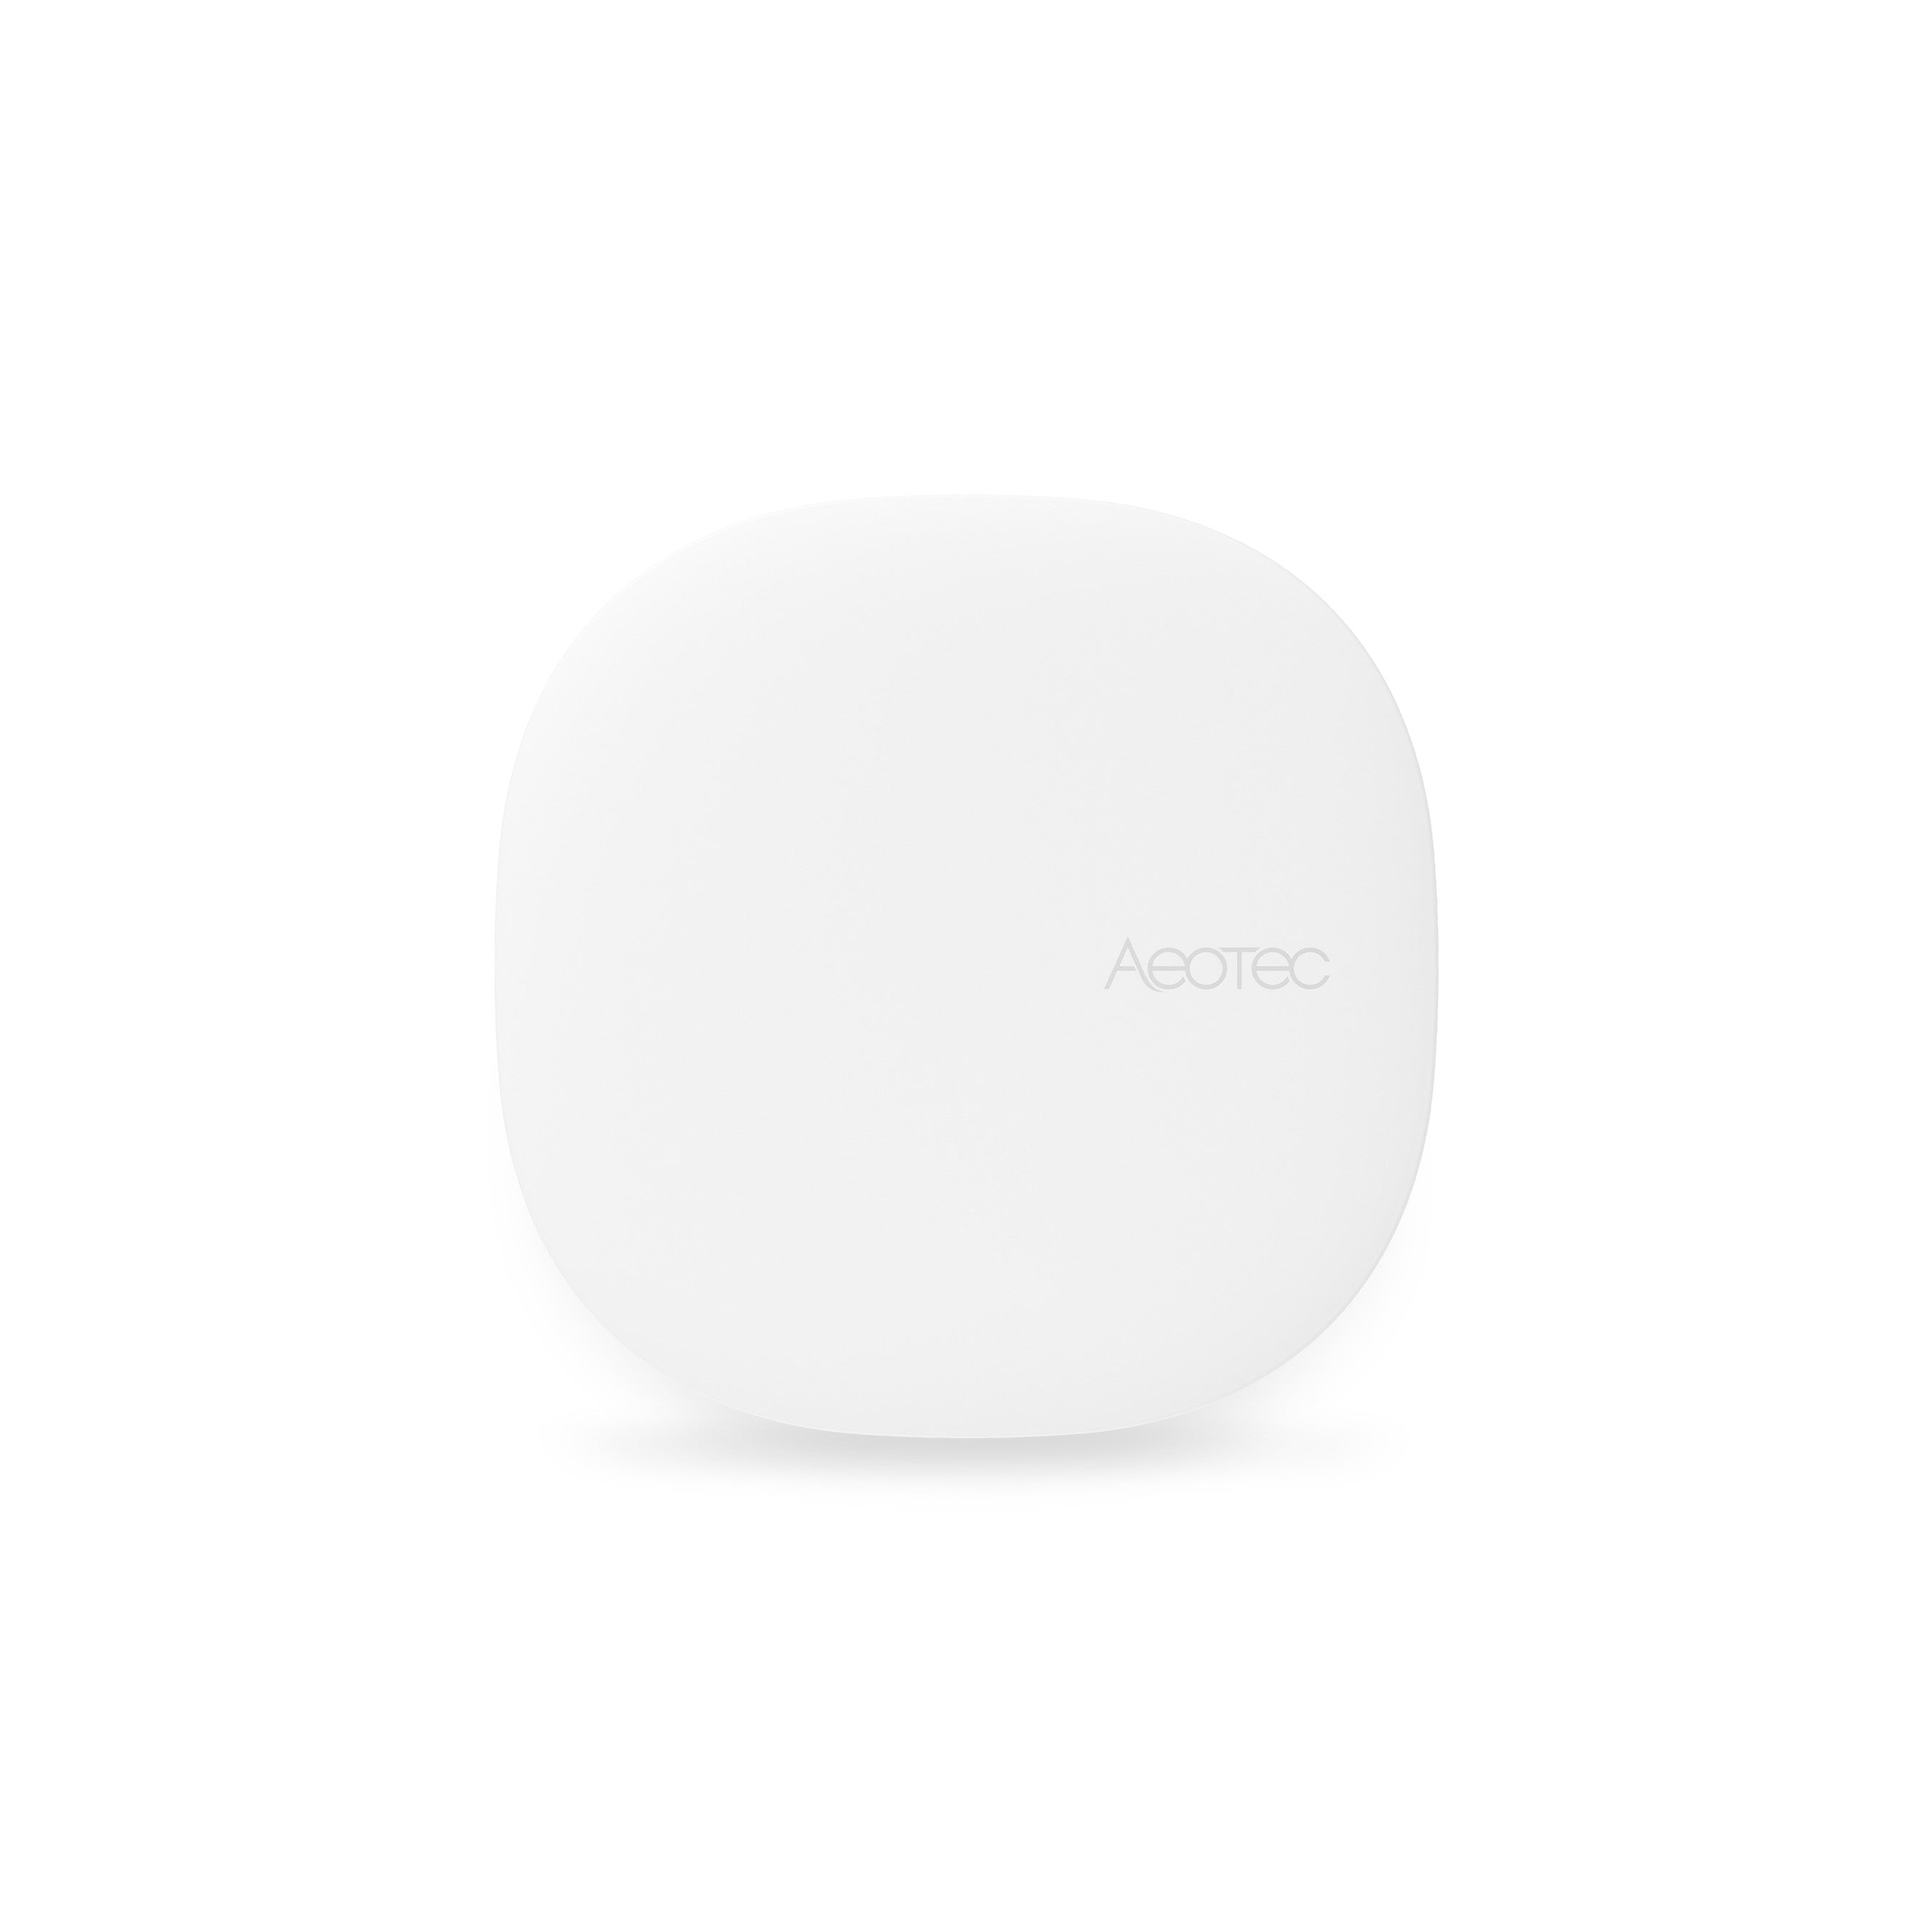 Aeotec Smart Home Hub - Works as a SmartThings Hub